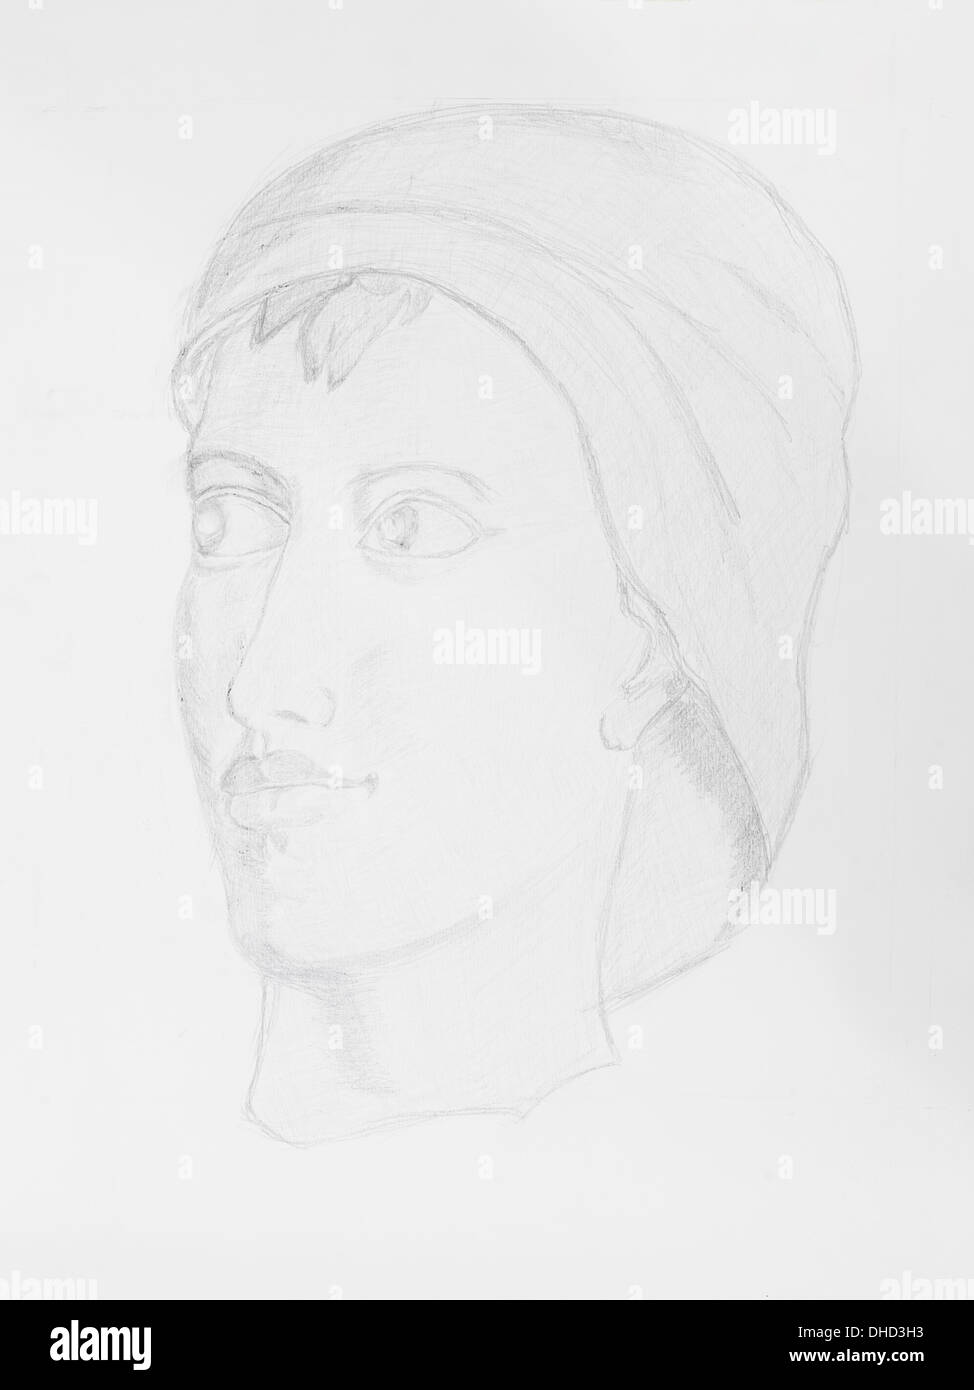 Portrait de femme dessin au crayon sur papier blanc Banque D'Images